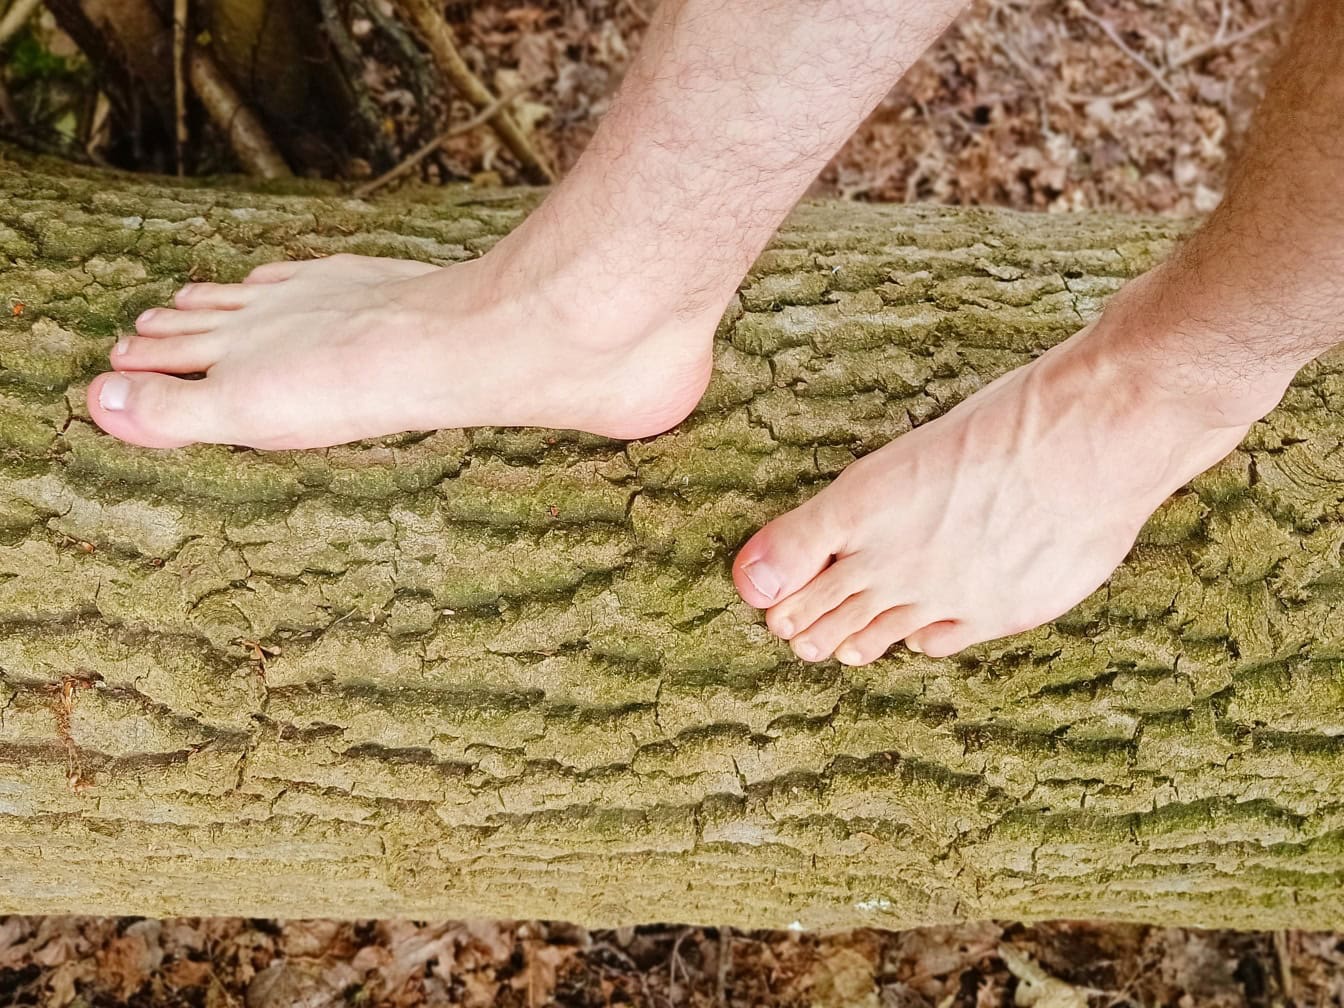 Pies descalzos de una persona en el tronco de un árbol